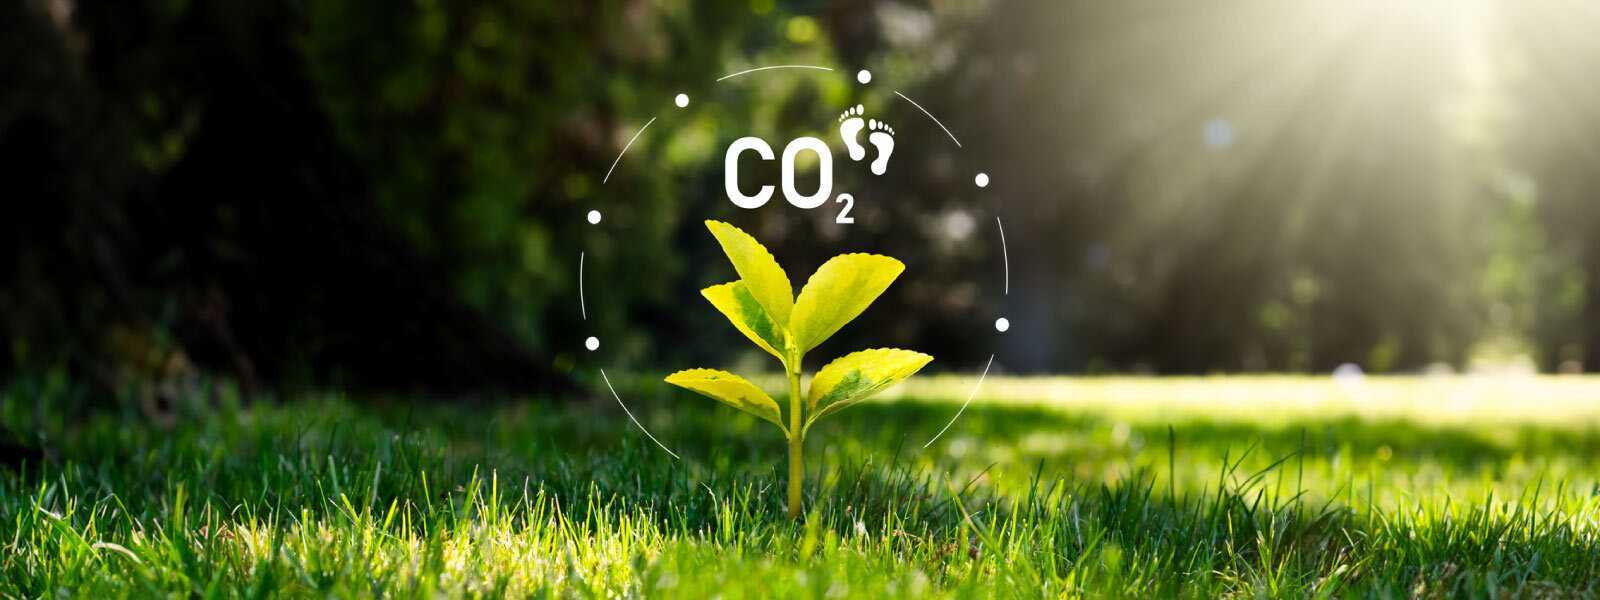 Alivo Zero ayuda a las empresas a alcanzar sus objetivos medioambientales a través del renting de vehículos y activos productivos menos contaminantes, telemetría avanzada y programas de compensación de emisiones.